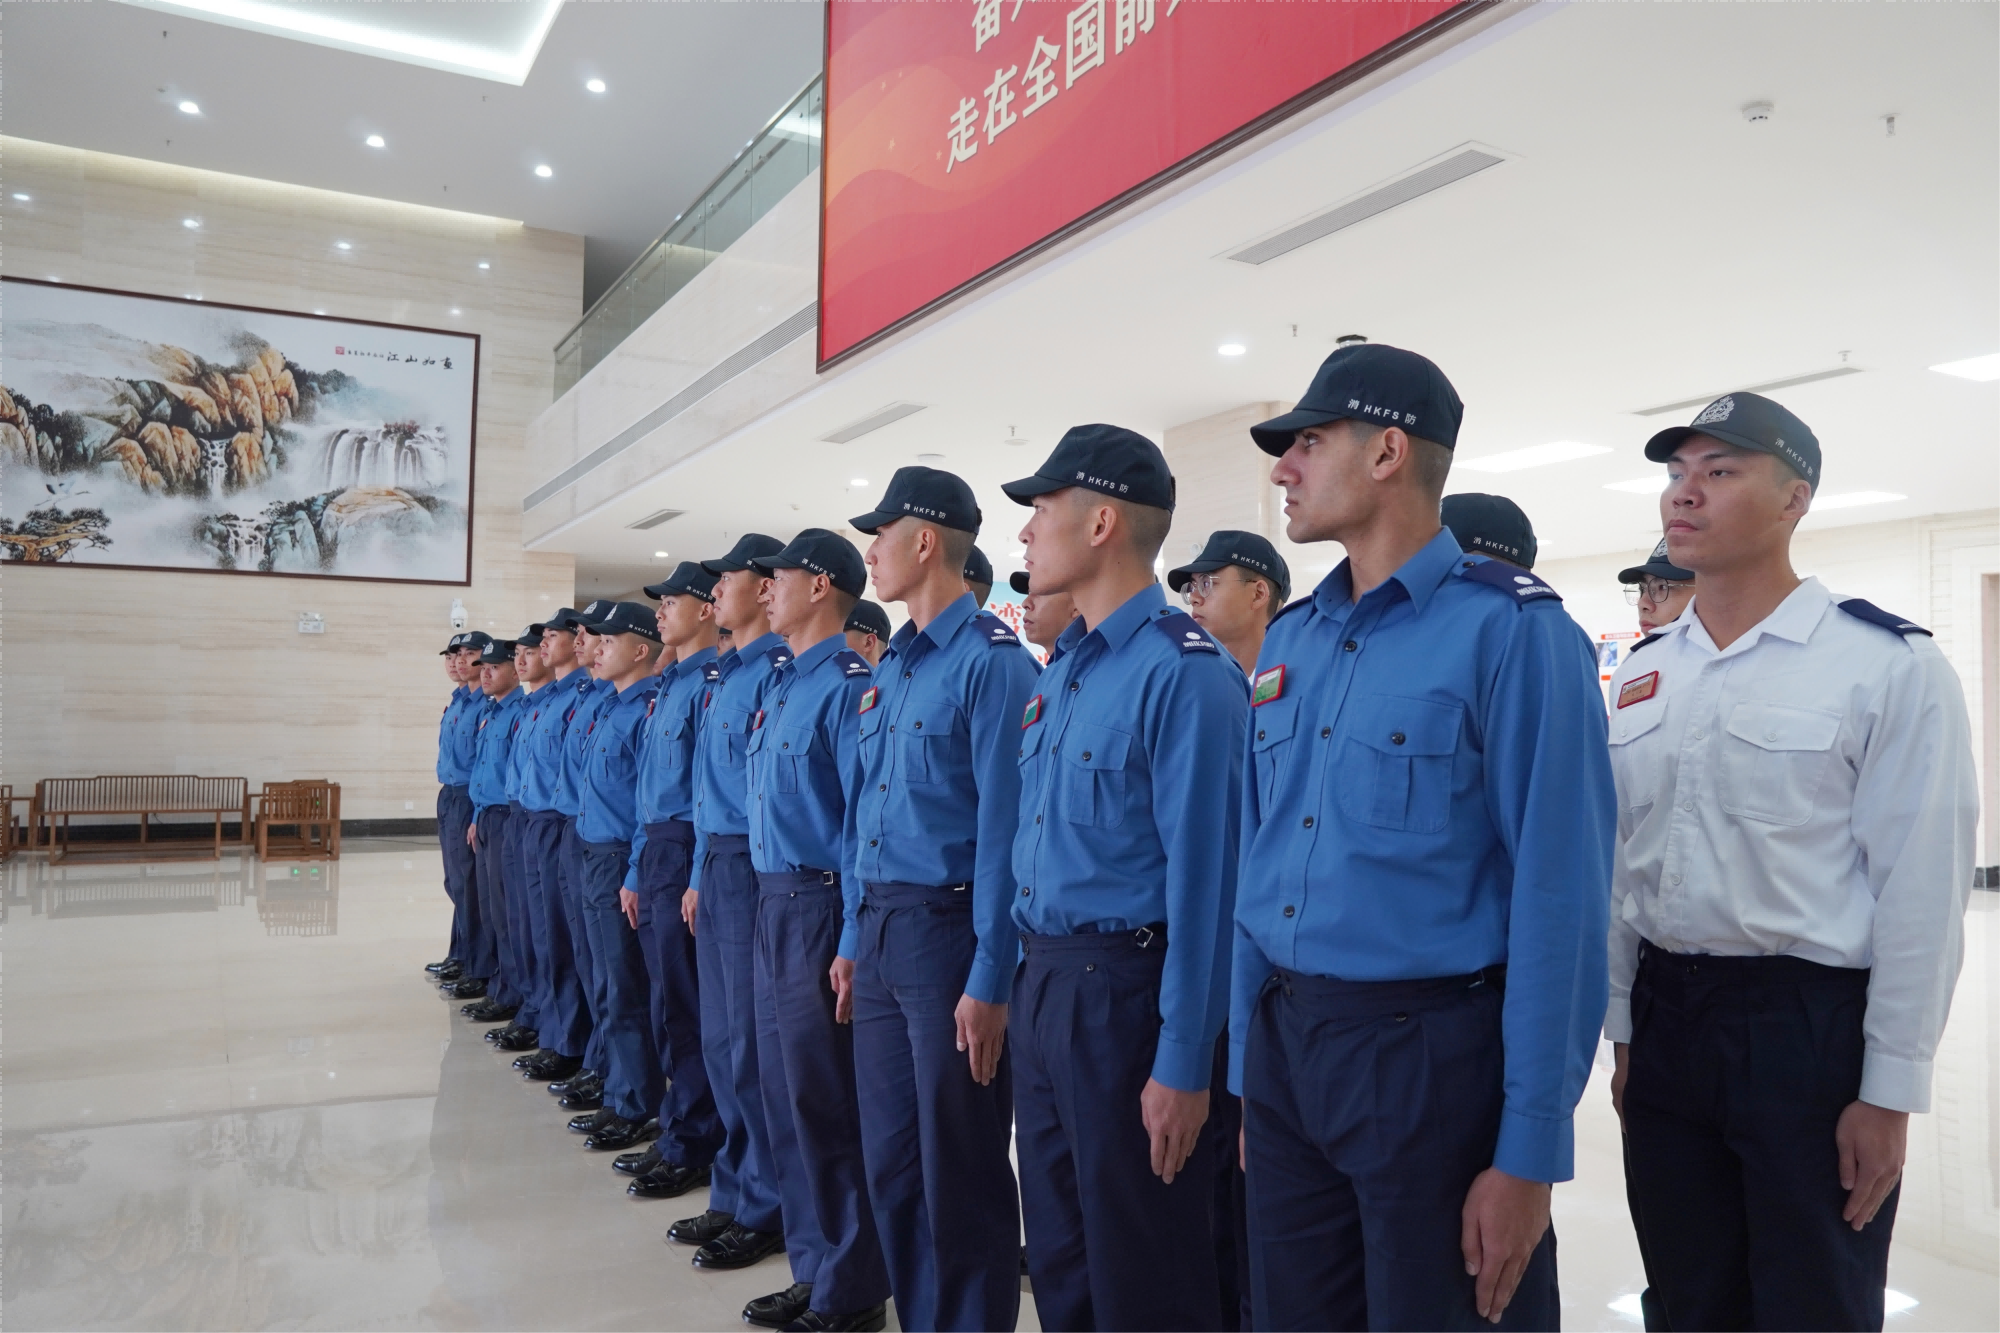 香港消防處消防及救護學院學員以昂揚奮發的姿態迎接研習。王雅蝶 攝